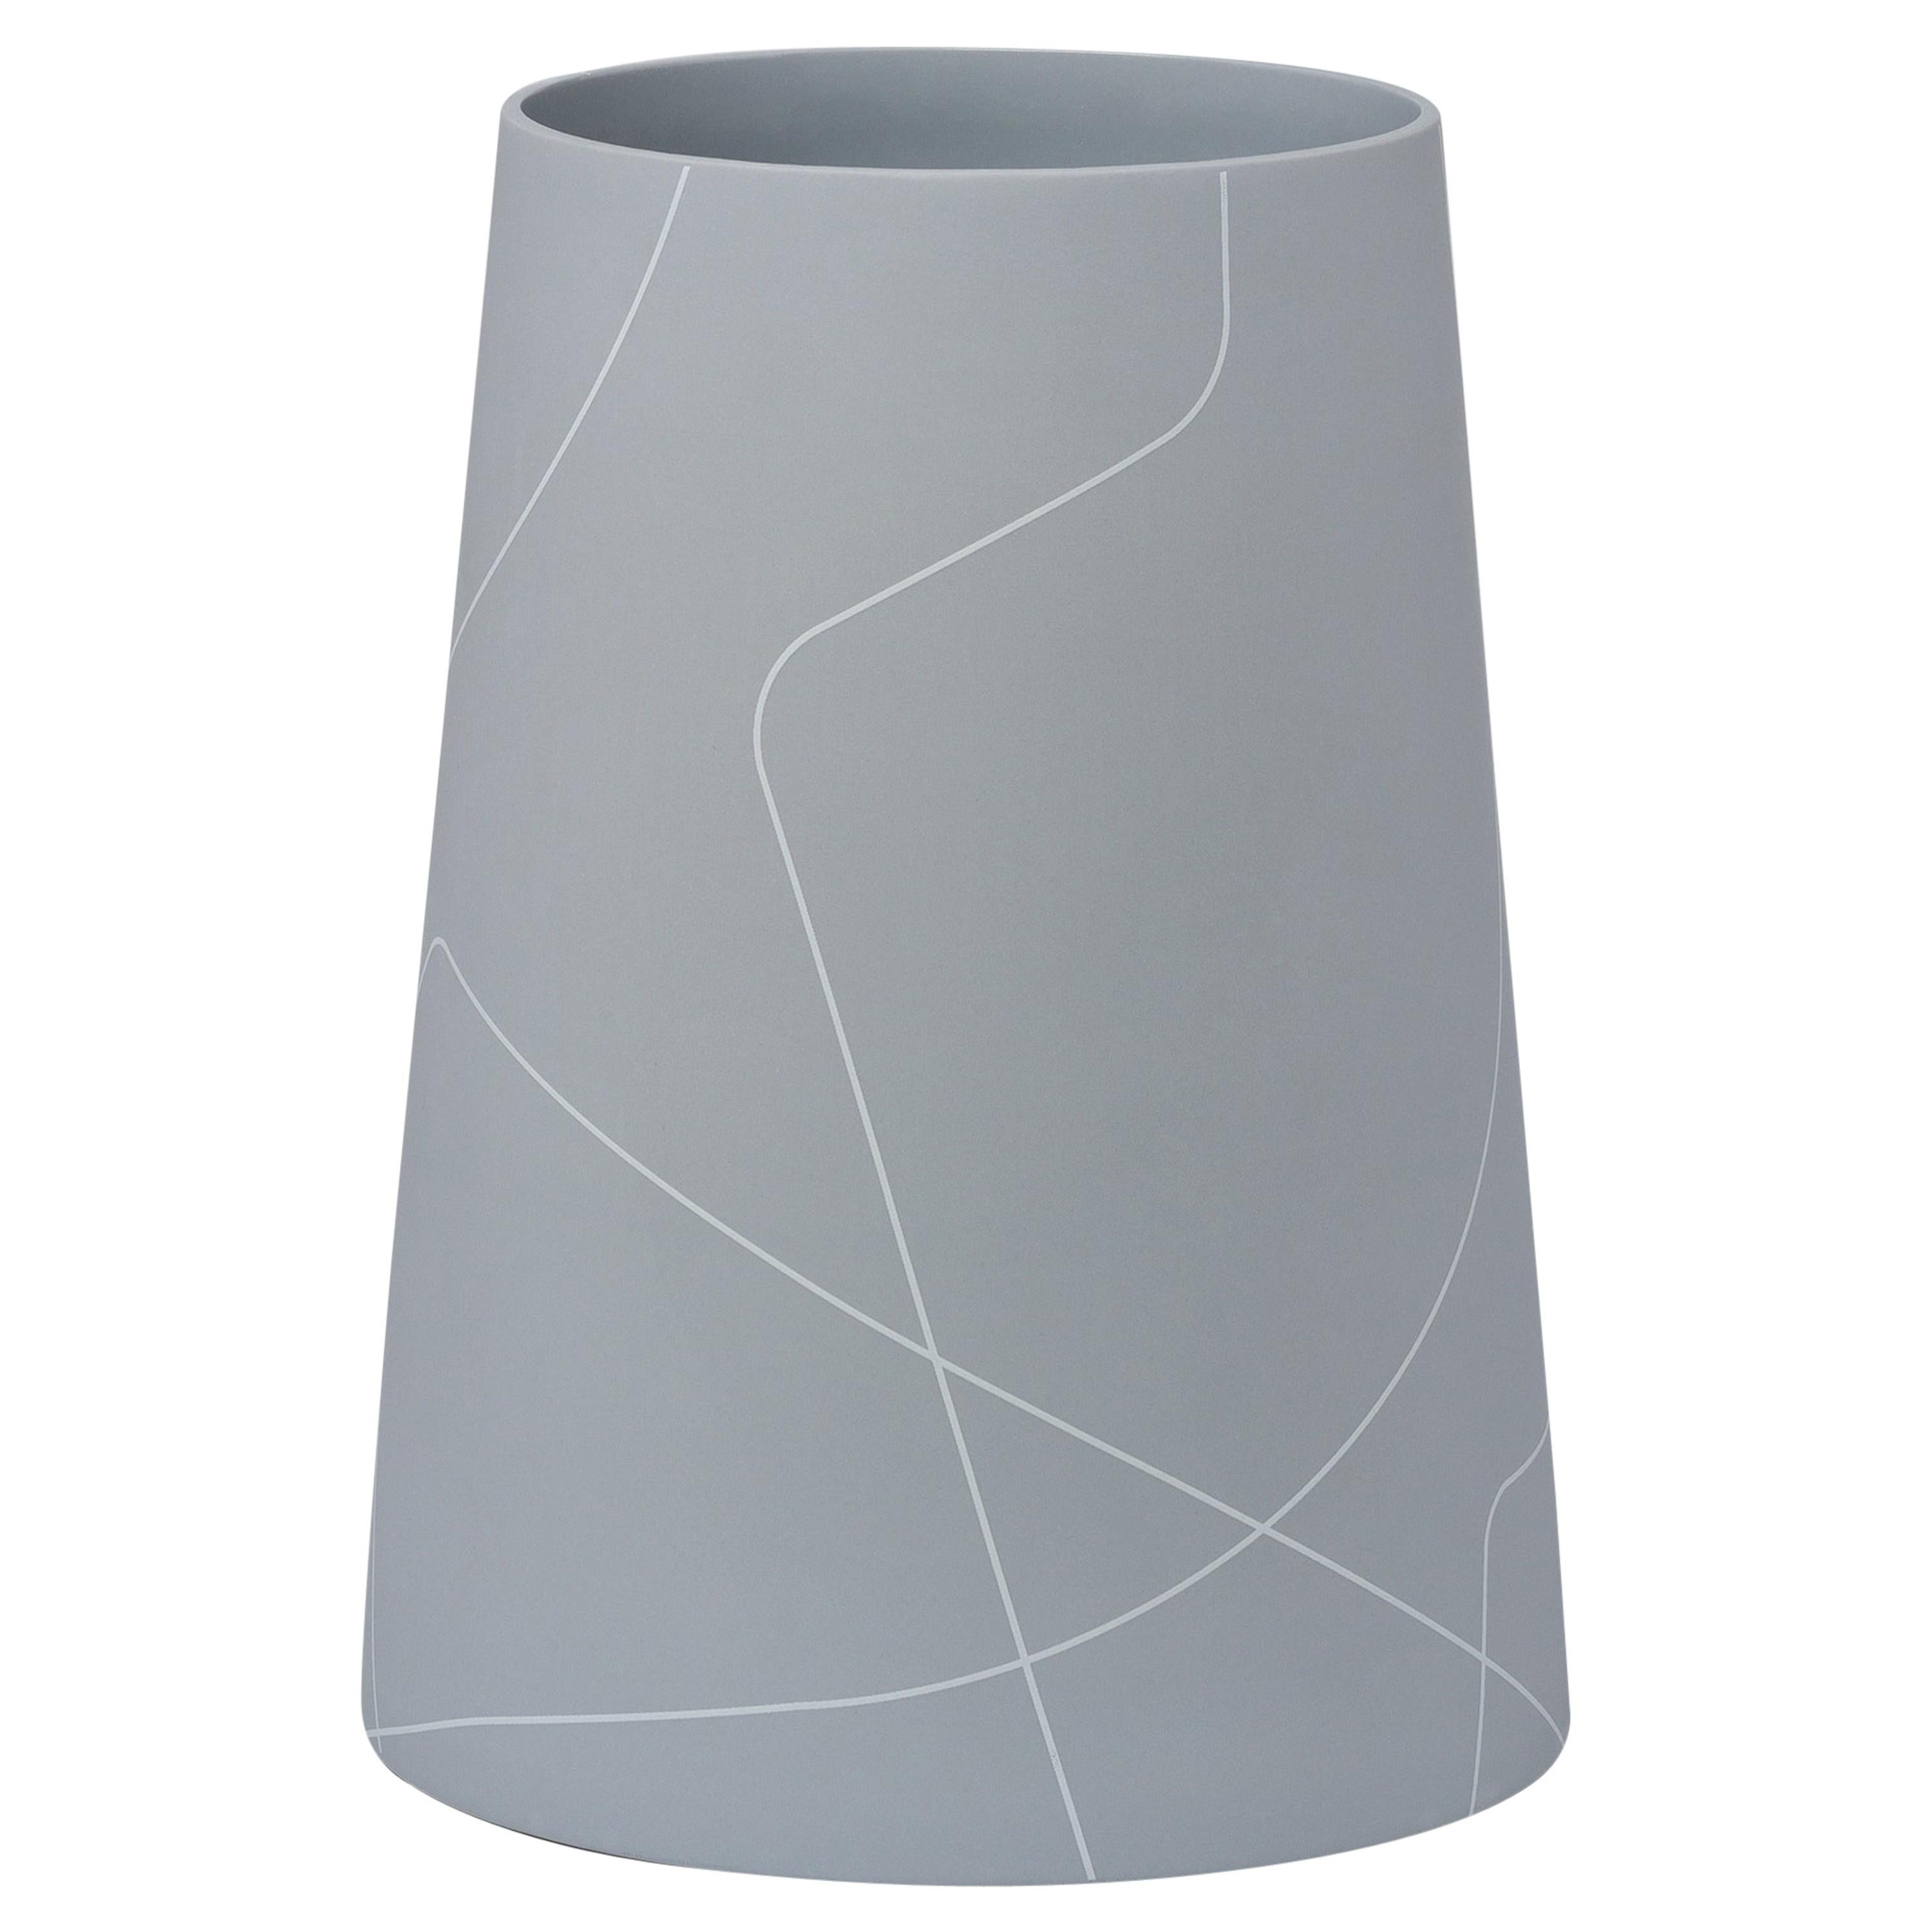 Grand vase conique en céramique gris moyen avec motif de lignes graphiques